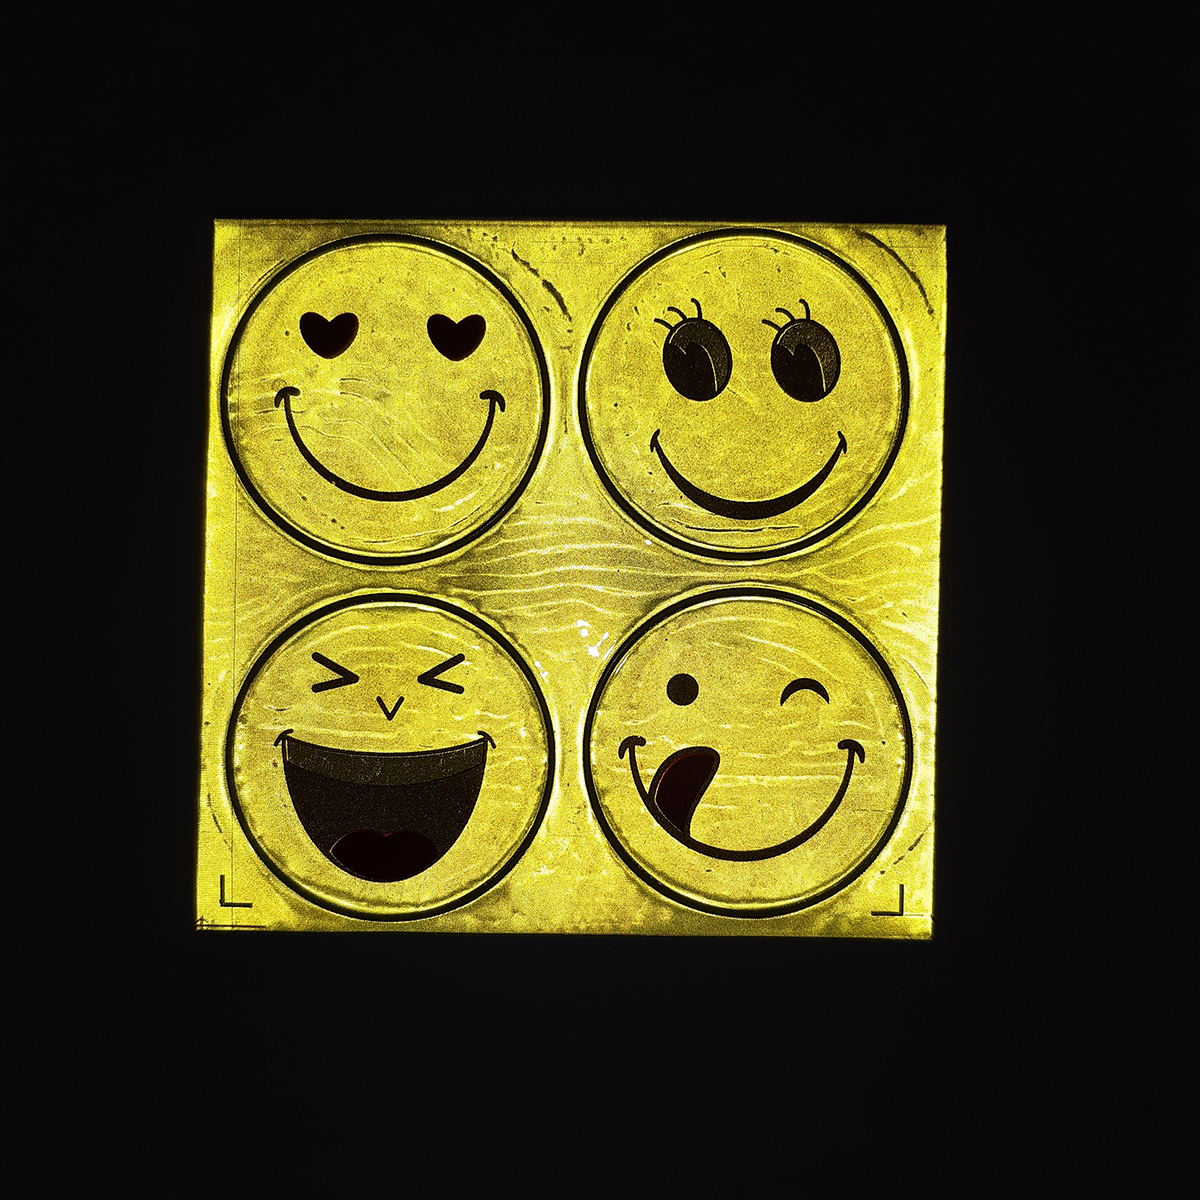 Tấm Sticker dán phản quang 4 hình mặt cười